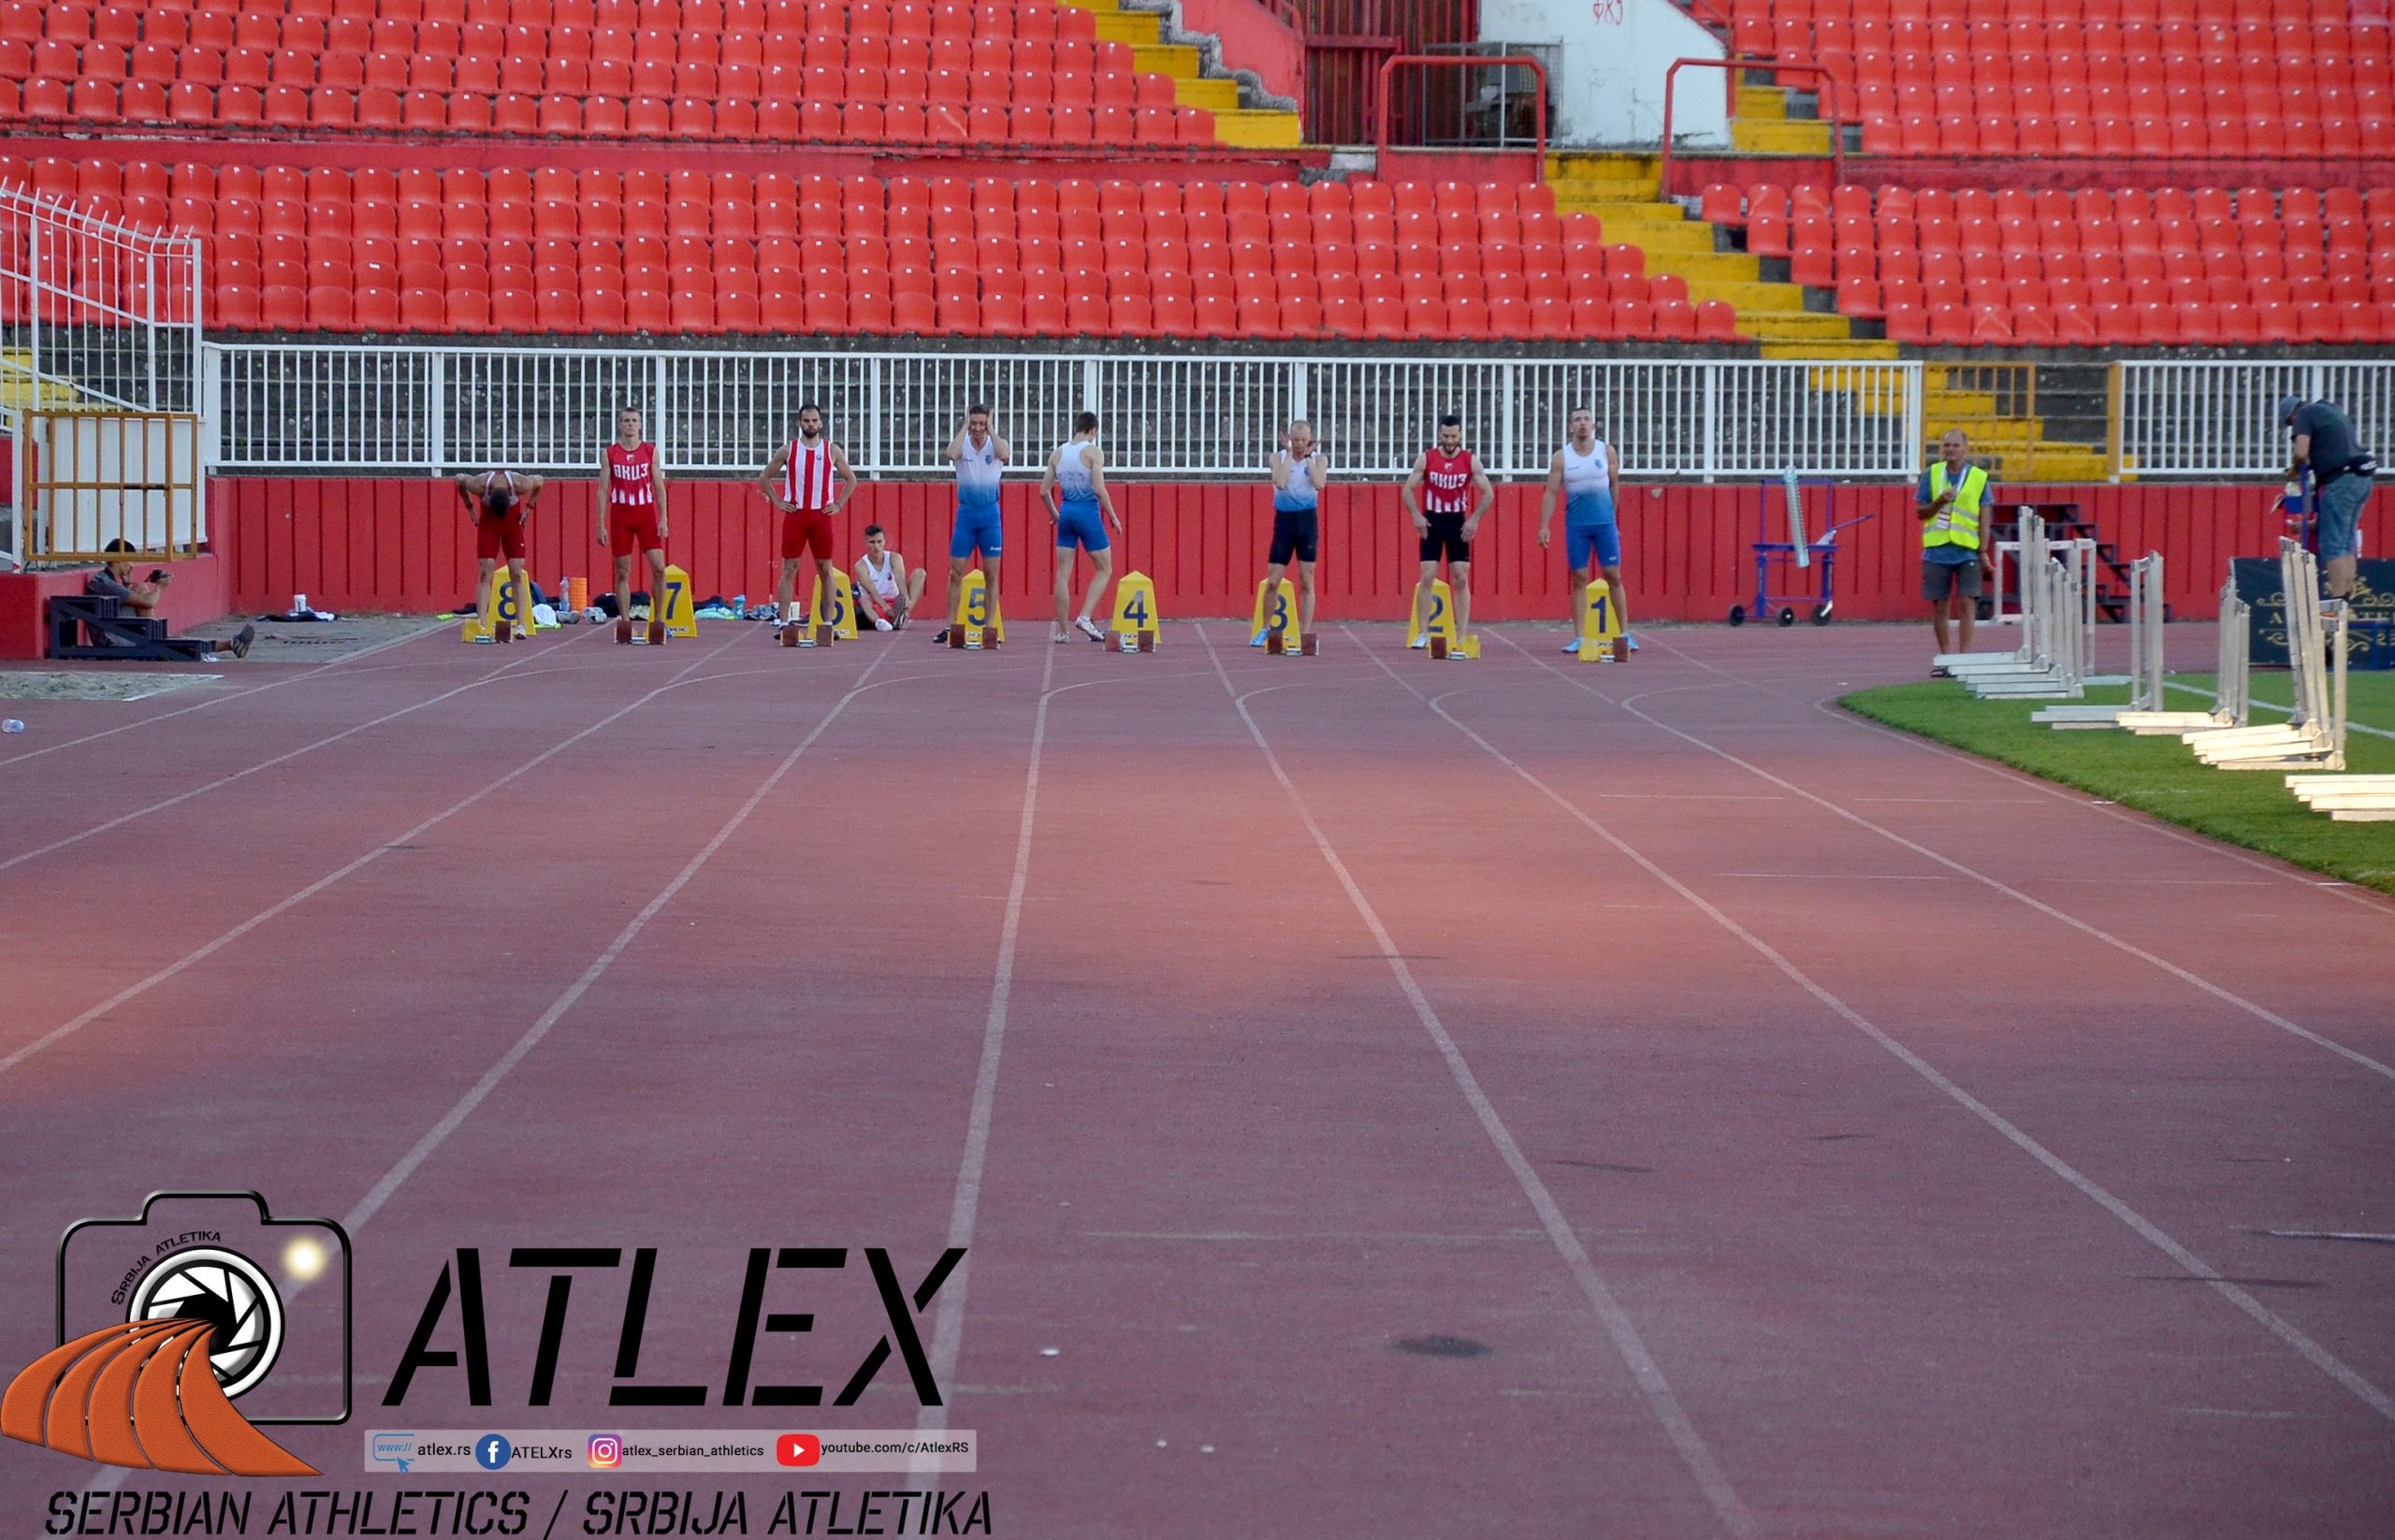 Priprema za start trke na 100 metara - finale VK za seniore na juniorskom prvenstvu Vojvodine 2020 - 22. avgust;   Foto: Atlex